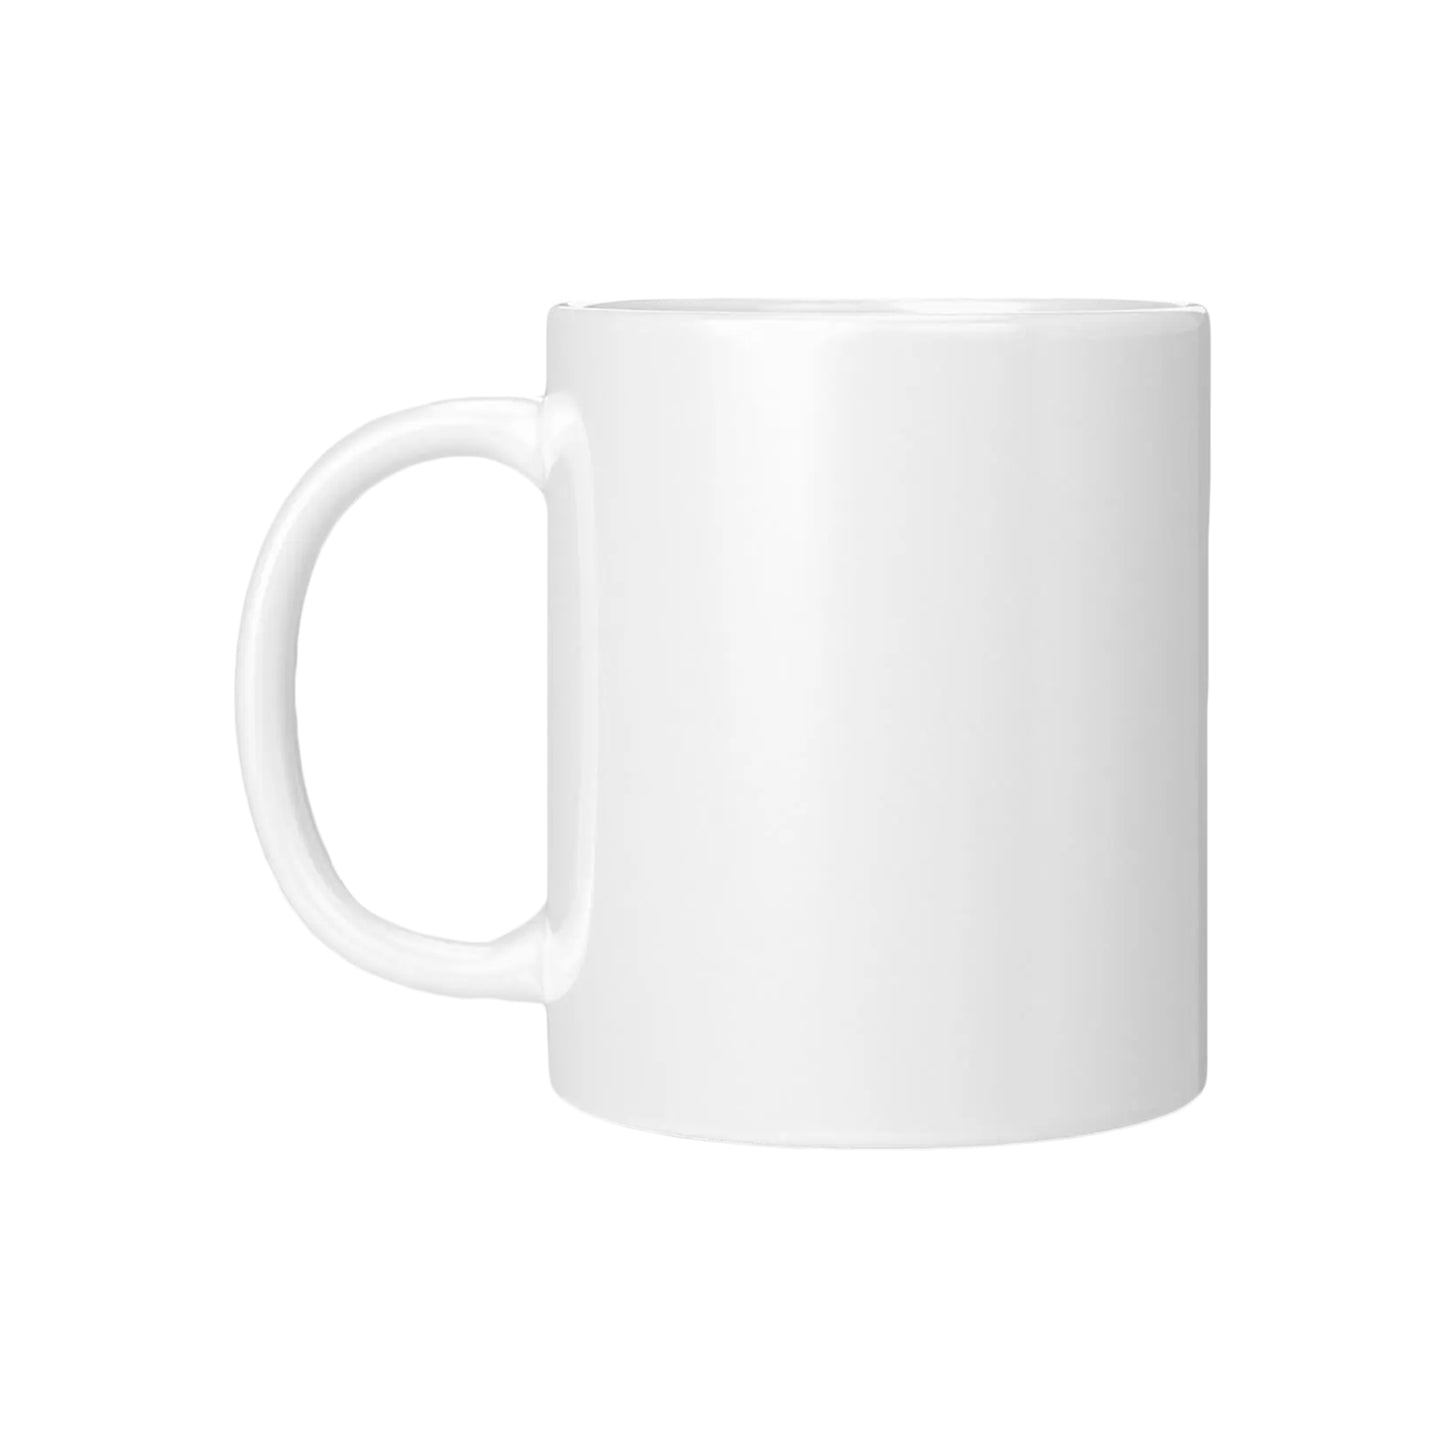 Skating Is My Favorite Season, White Coffee Mug 11 oz